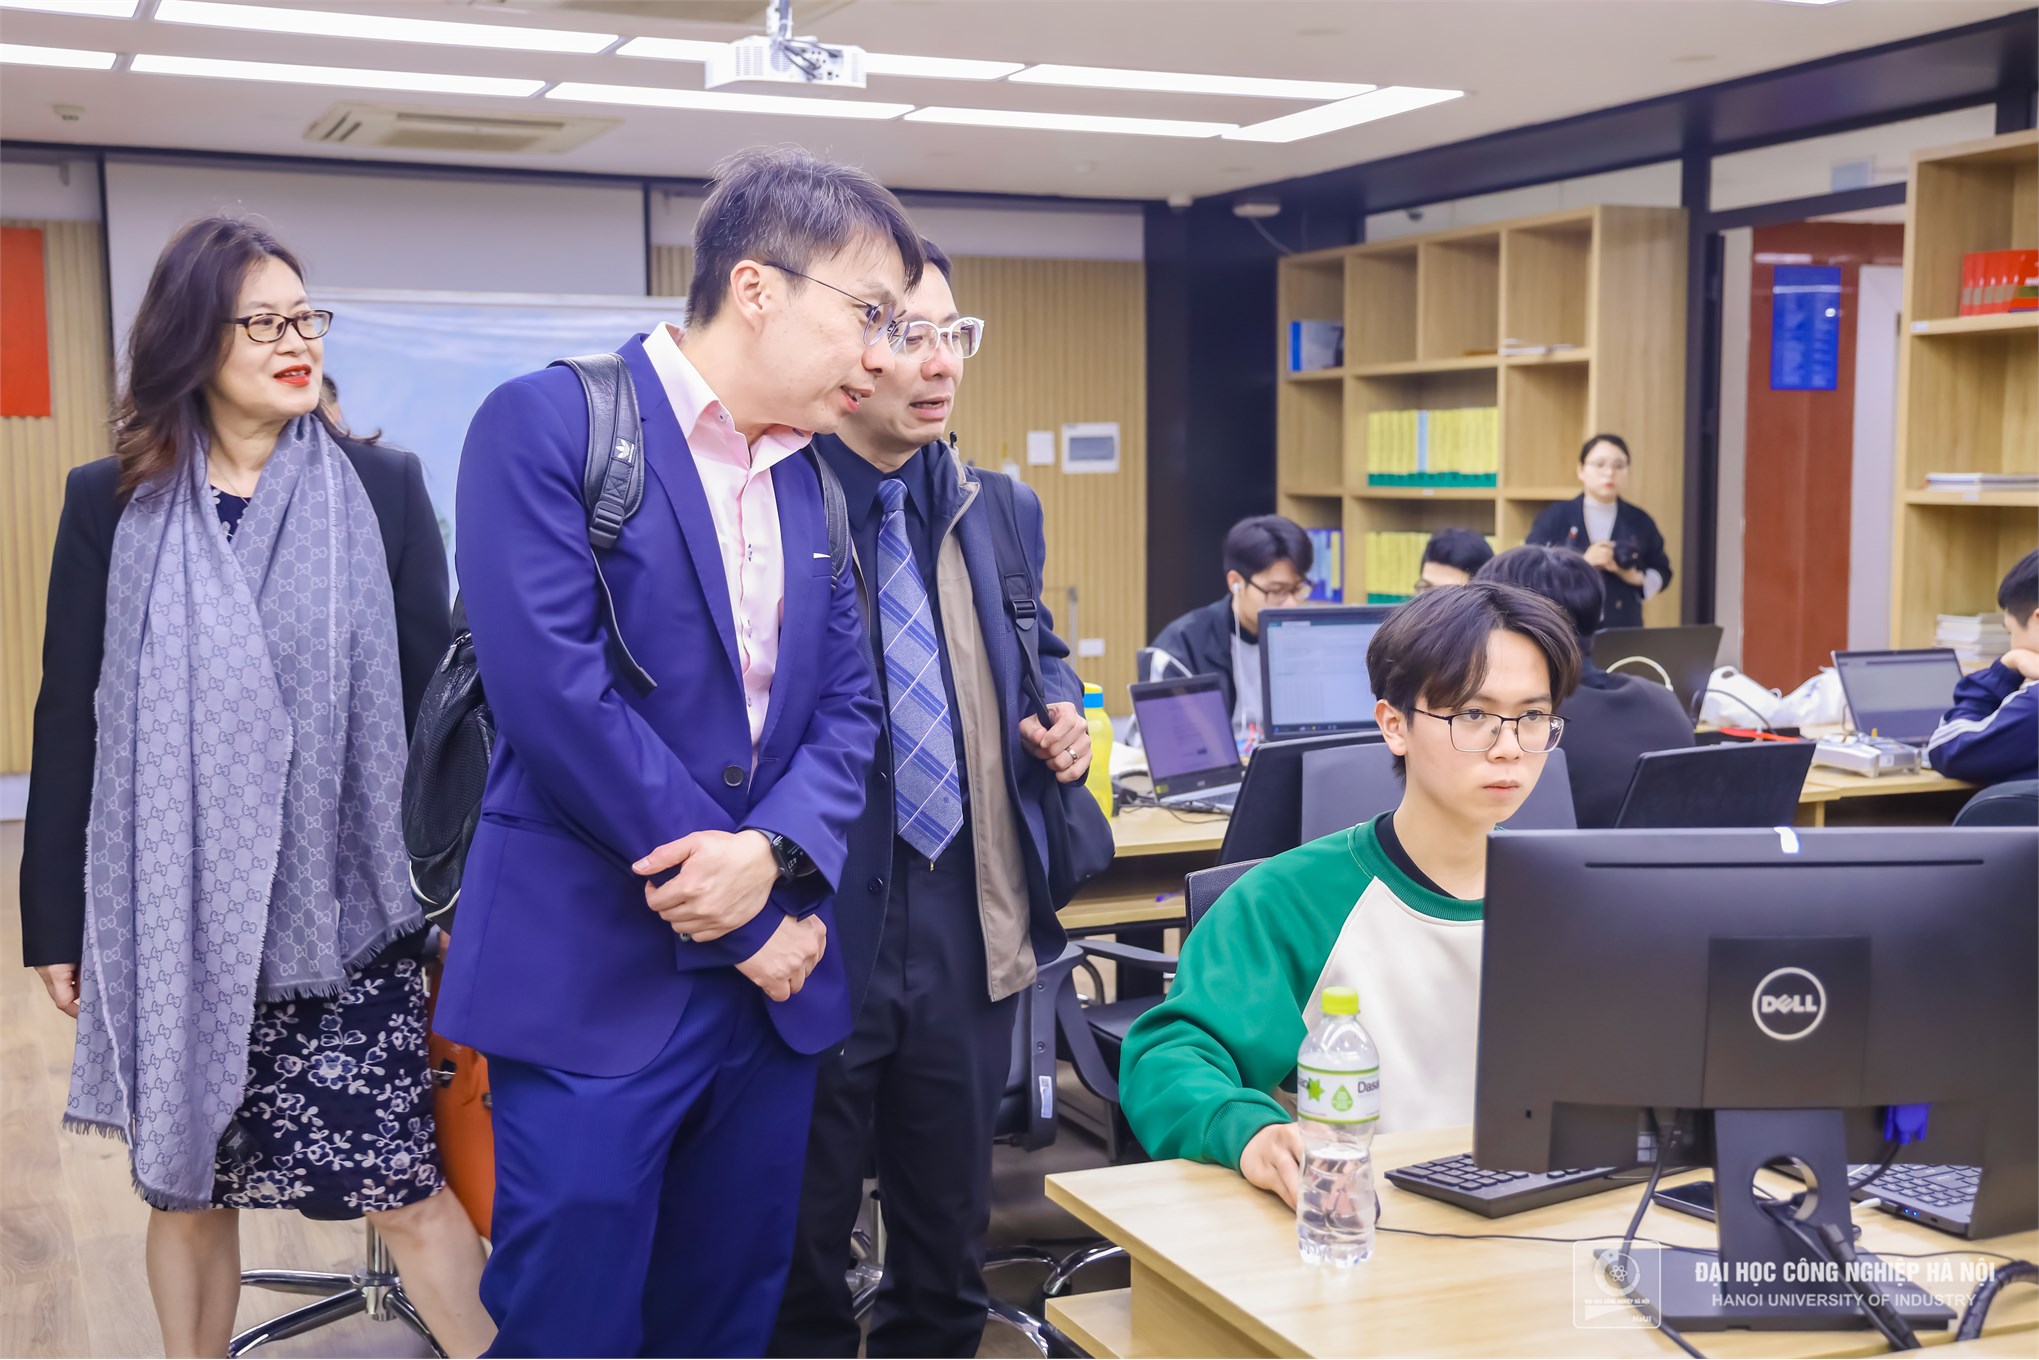 Đại học Công nghiệp Hà Nội đón đầu xu hướng, sẵn sàng đào tạo ngành công nghiệp vi mạch bán dẫn